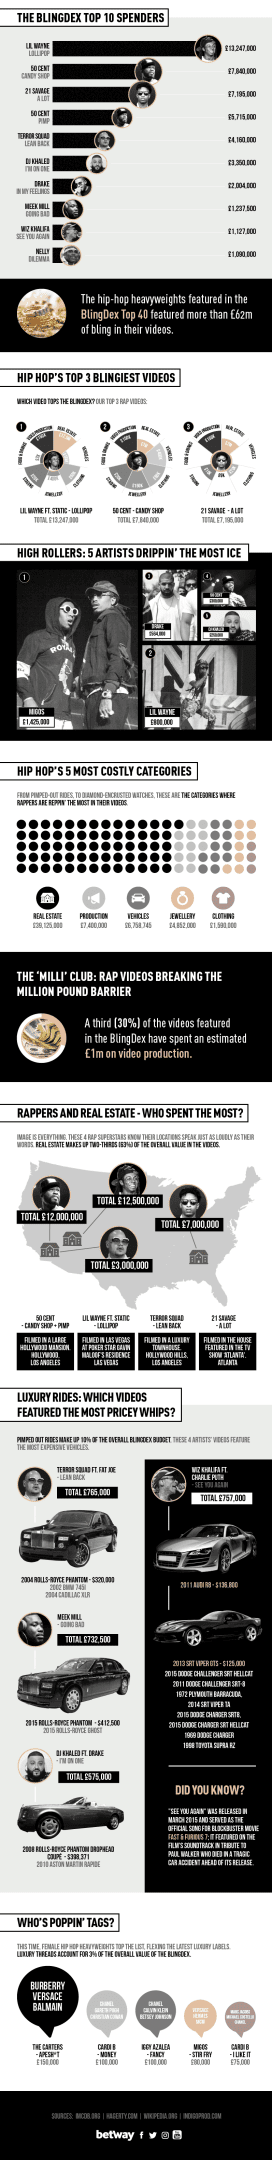 Blingdex Rap Edition Infographic